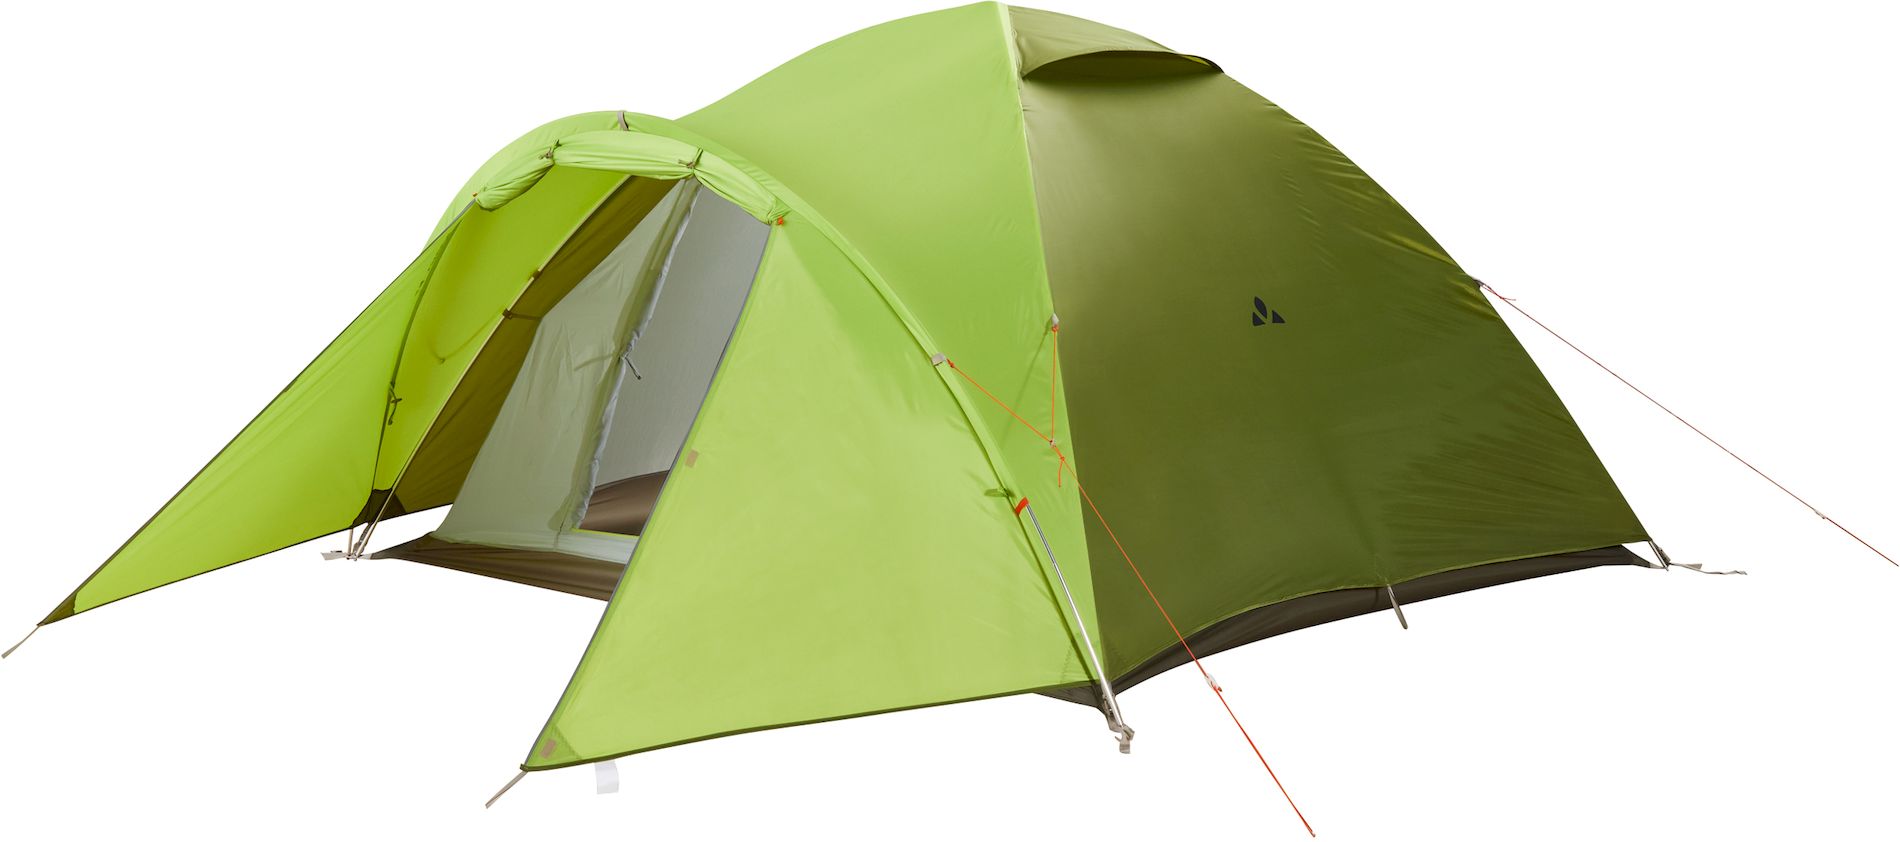 VAUDE Campo Grande XT 4P Tent - chute green - 4,911 kg -   - 2 ingangen - 1 zeer ruime vestibule